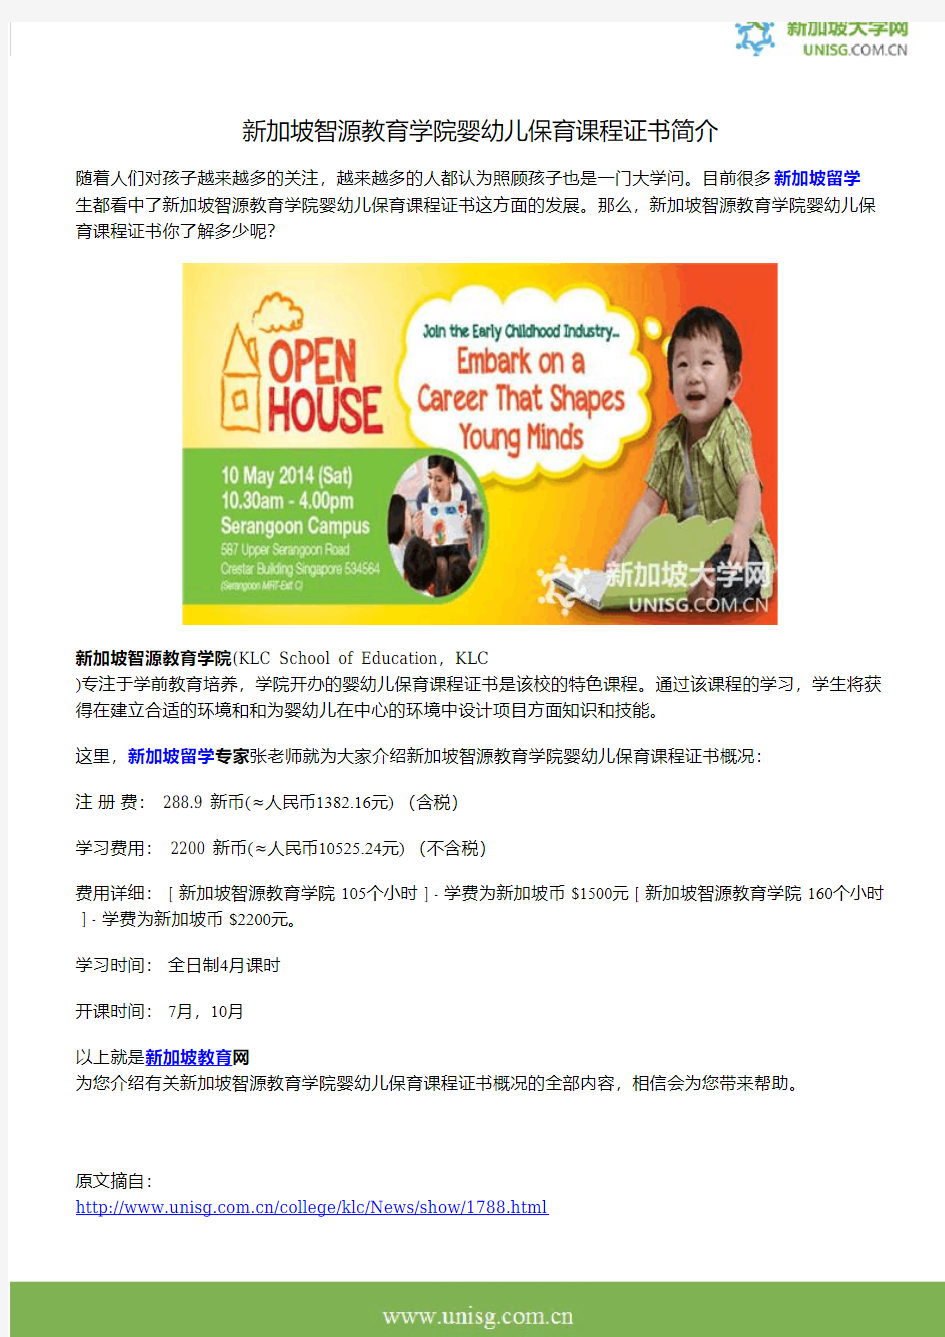 新加坡智源教育学院婴幼儿保育课程证书简介